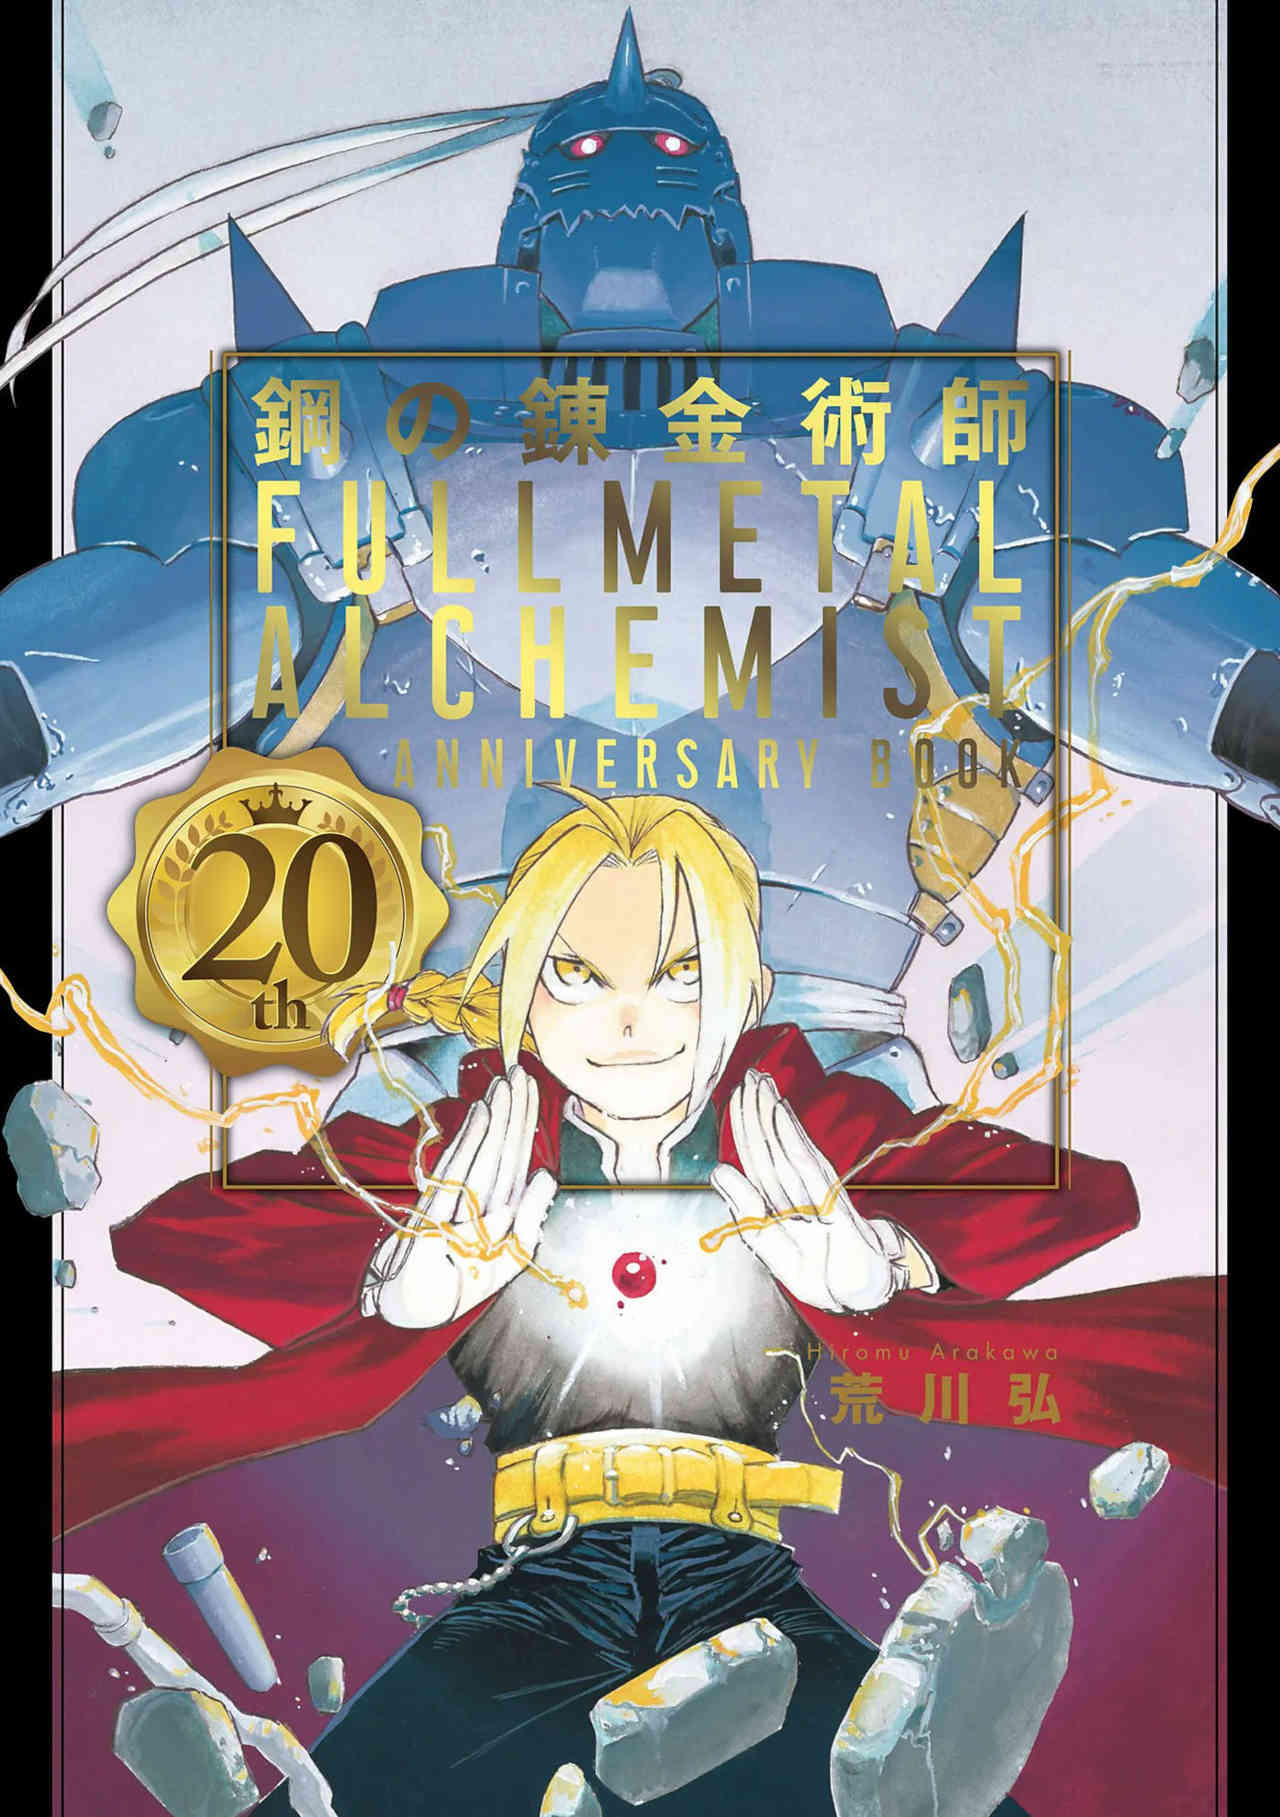 Fullmetal Alchemist celebra su 20 aniversario con material nuevo